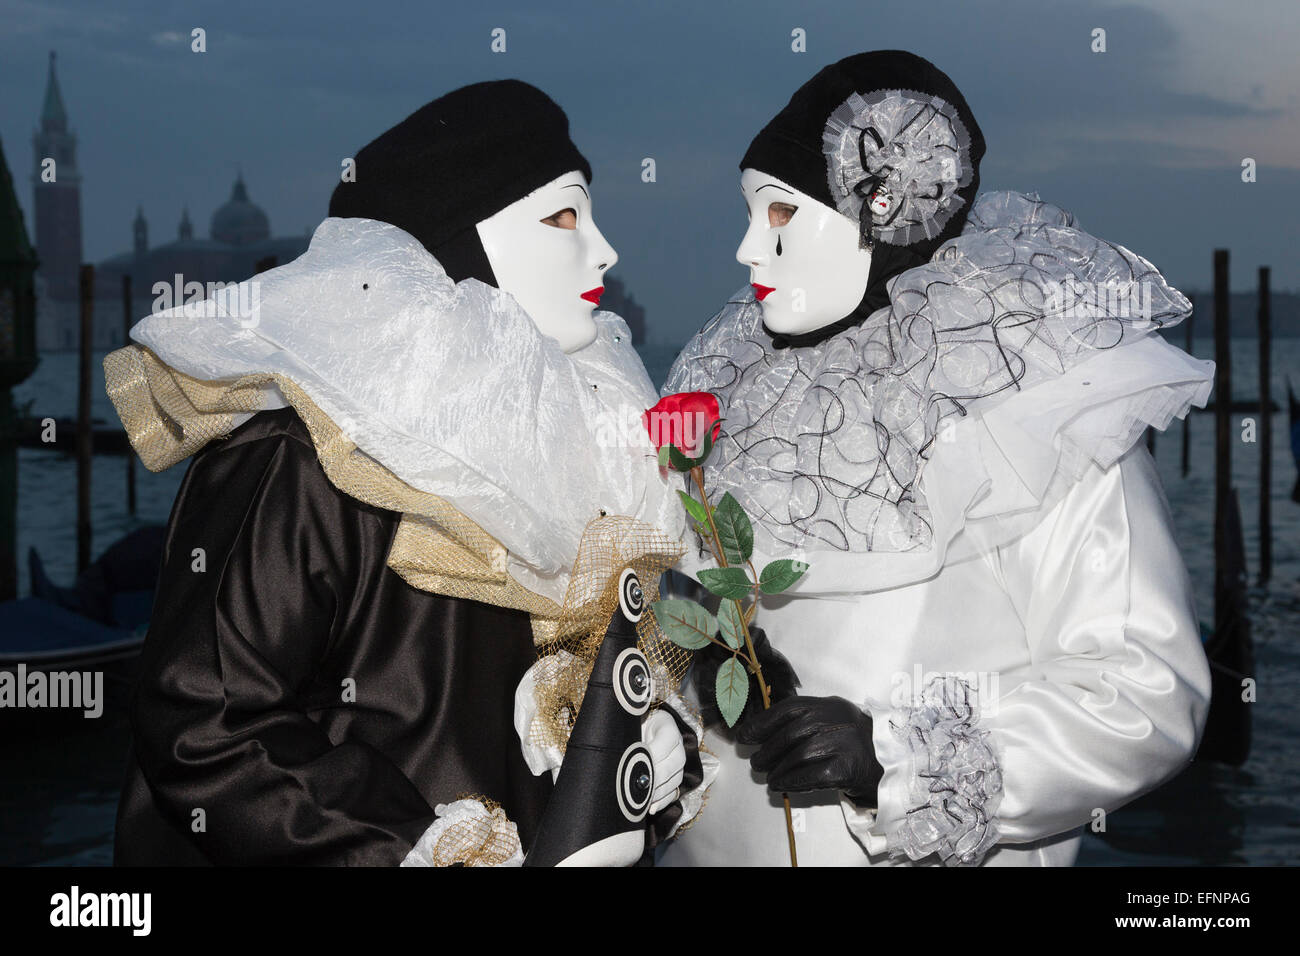 Venezia, Italia, 8 febbraio 2015. Persone indossano maschere tradizionali e costumi per celebrare il 2015 Carnevale a Venezia. carnivalpix/Alamy Live News Foto Stock